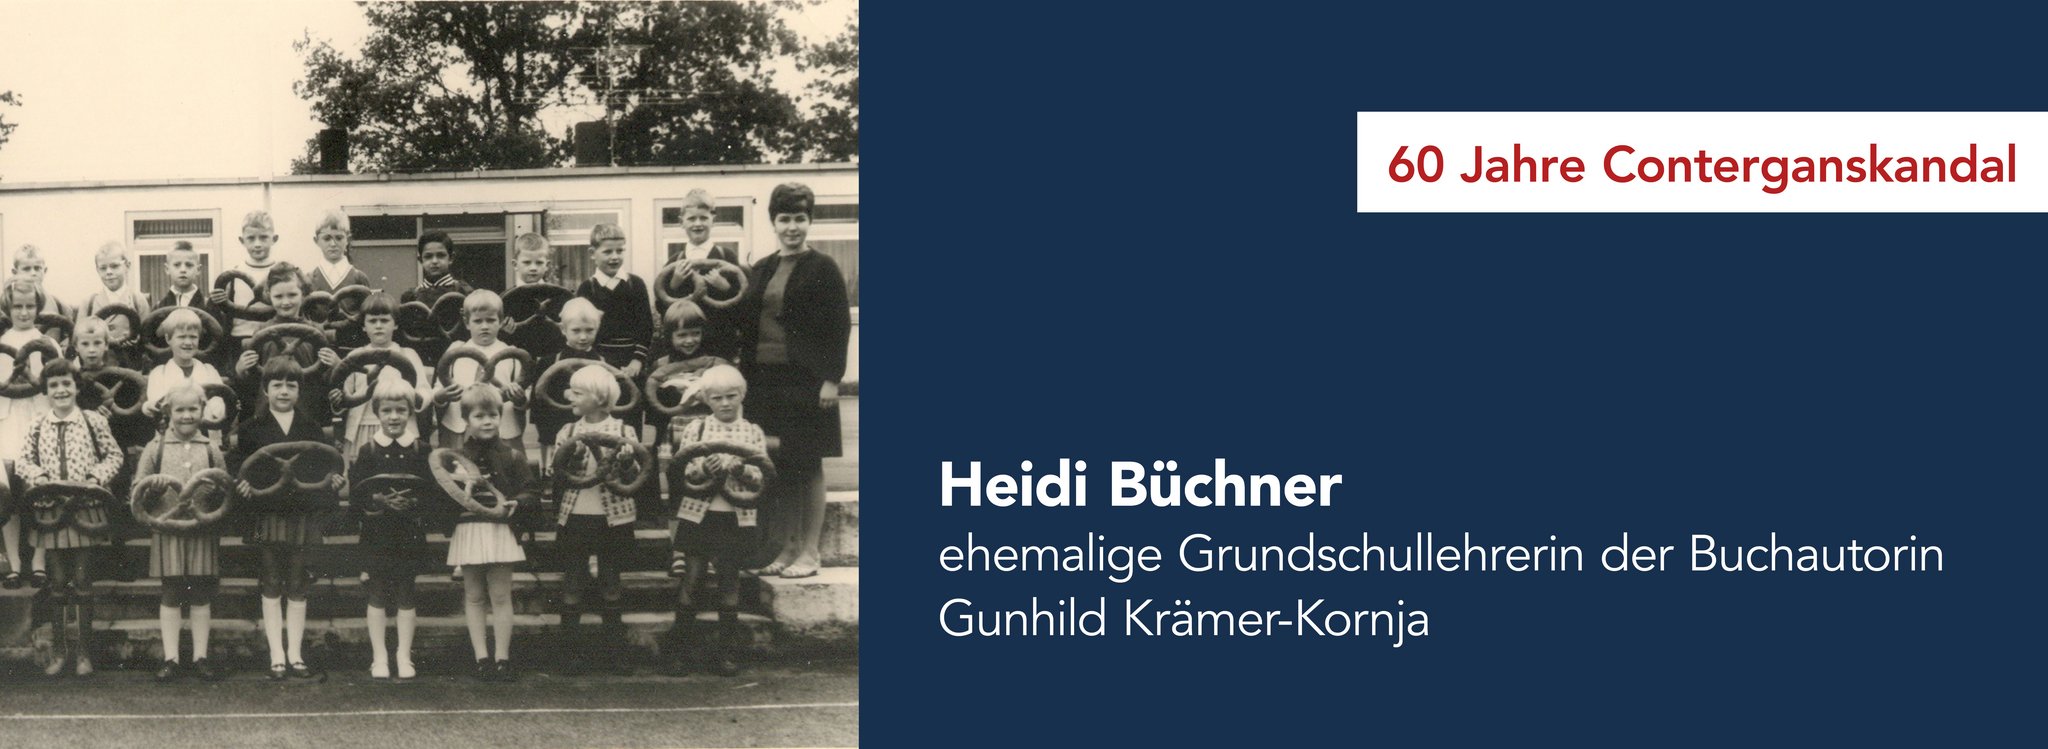 Das Bild zeigt die ehemalige Grundschullehrerin Heidi Büchner und ihre Schulklasse